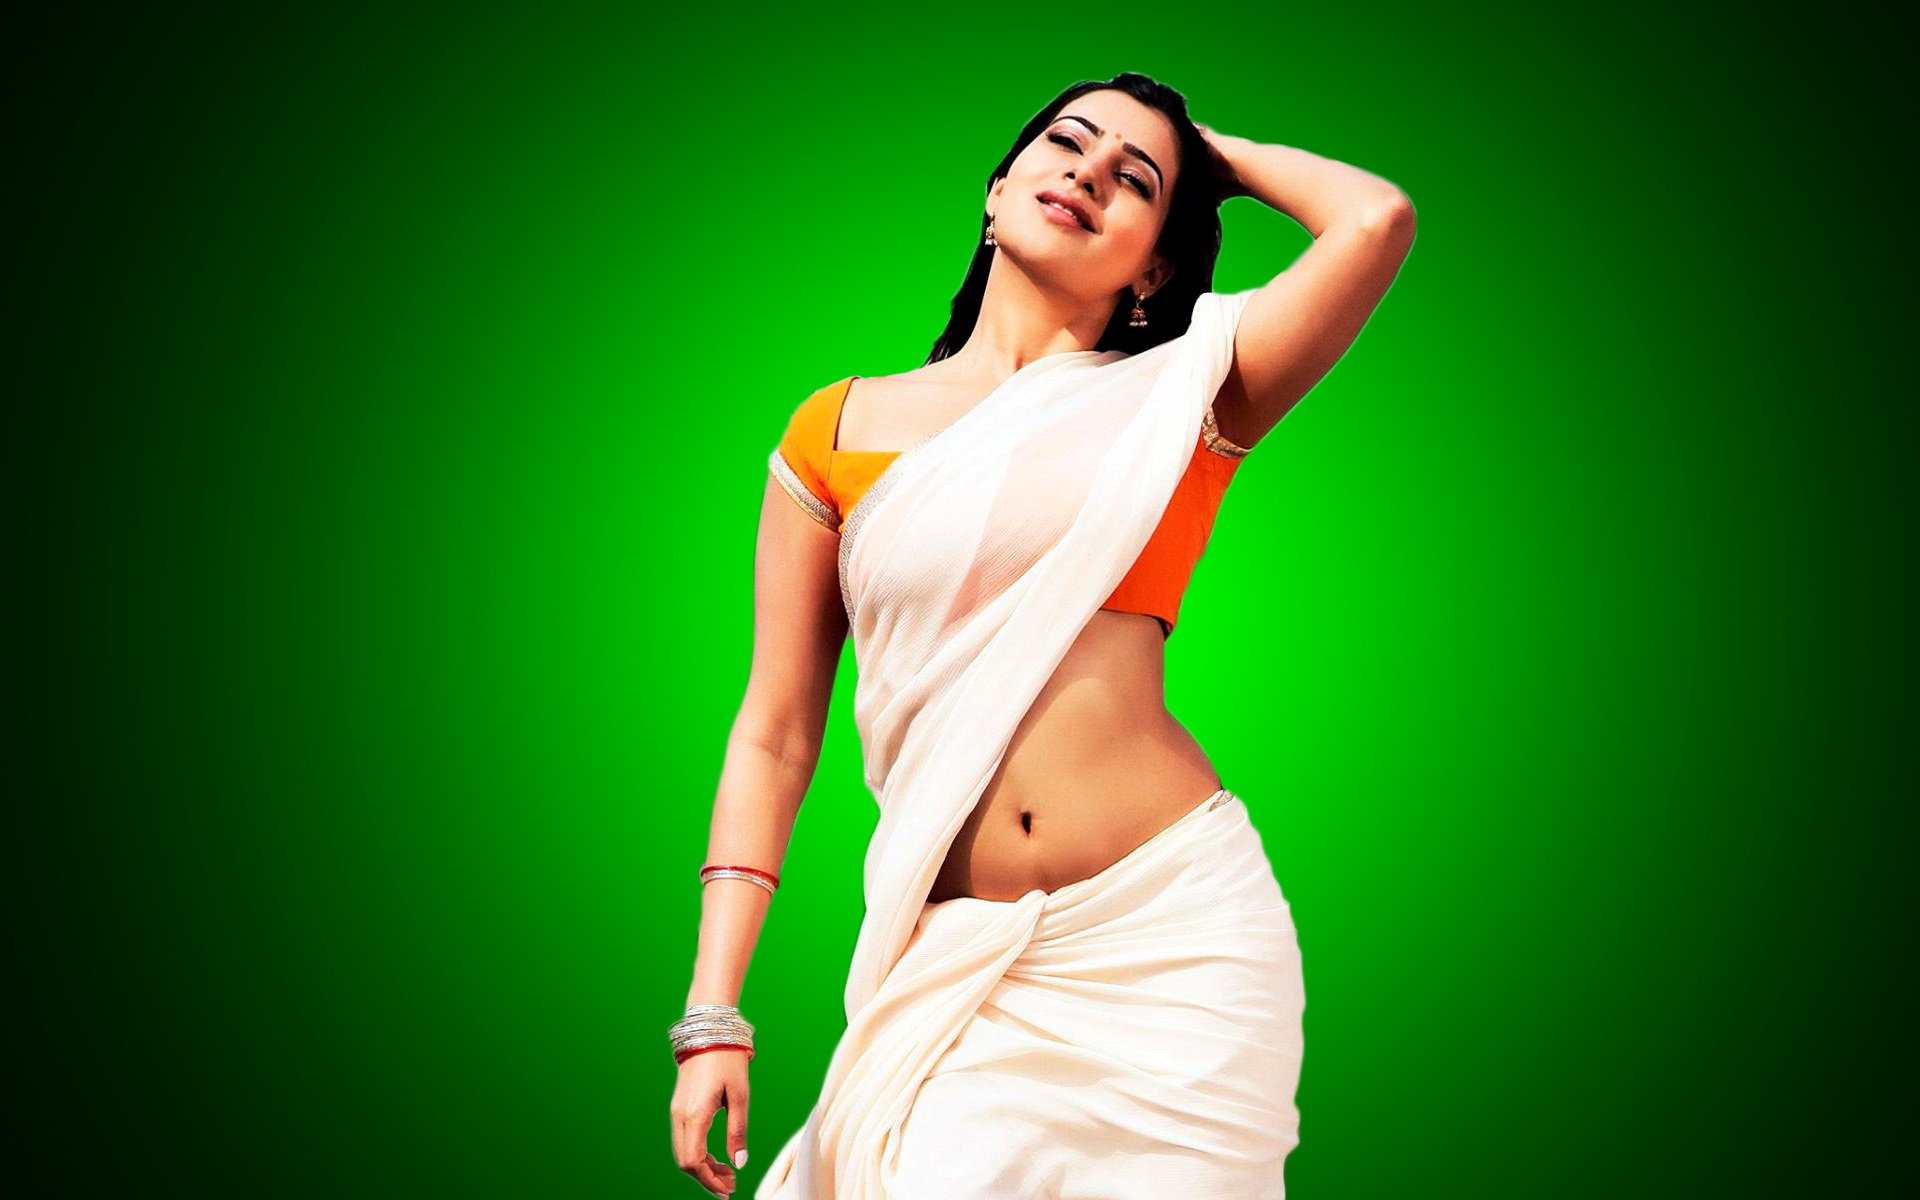 Samantha in jabardasth movie unseen photoshoot images , samantha in white s...